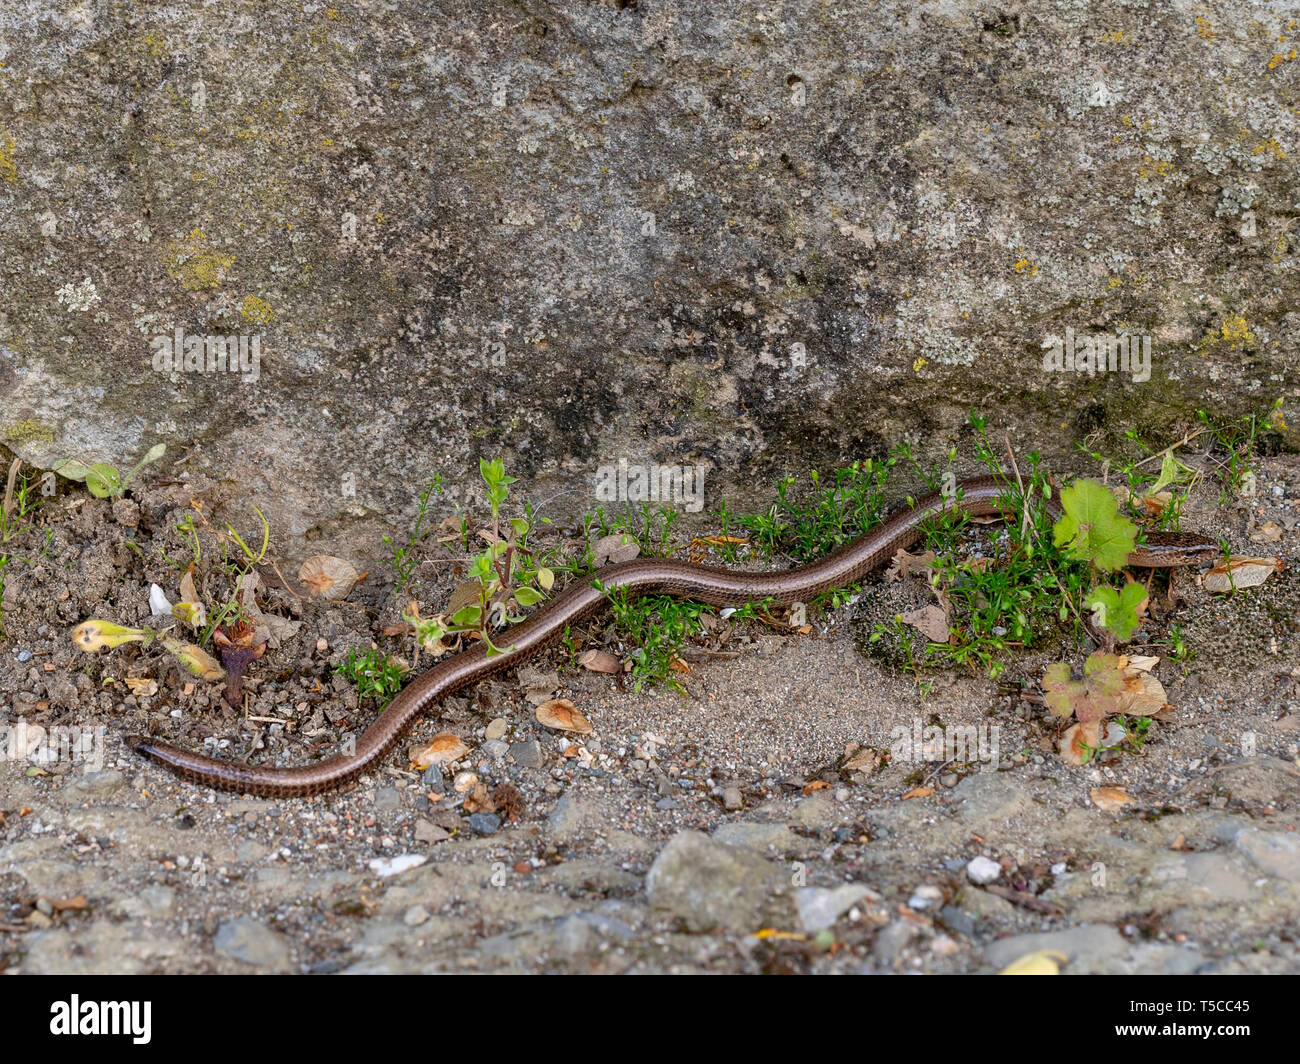 Slowworm aka langsam Wurm oder blindworm, Anguis fragilis, durch die Wand. Ein Reptil in Eurasien. Aka taube Otter. Stockfoto